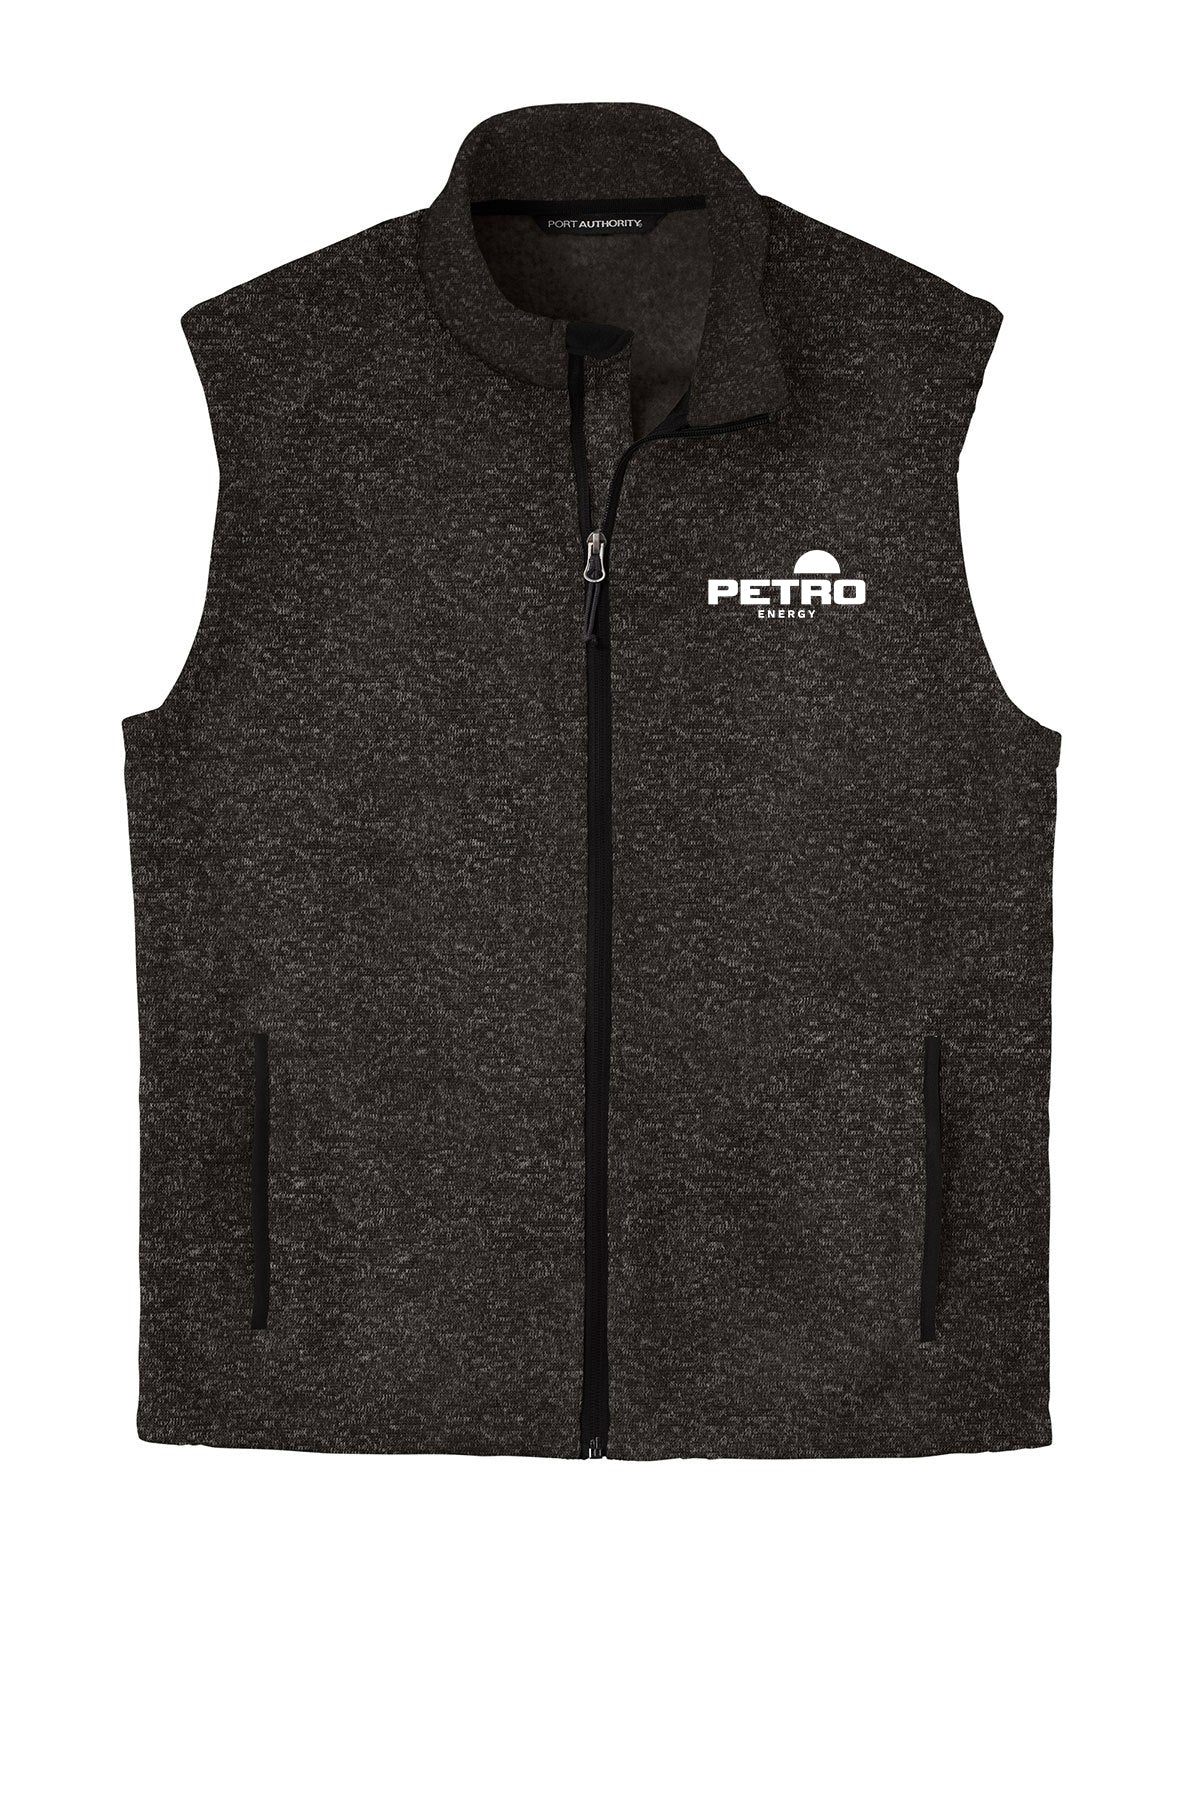 Petro Energy Sweater Fleece Vest